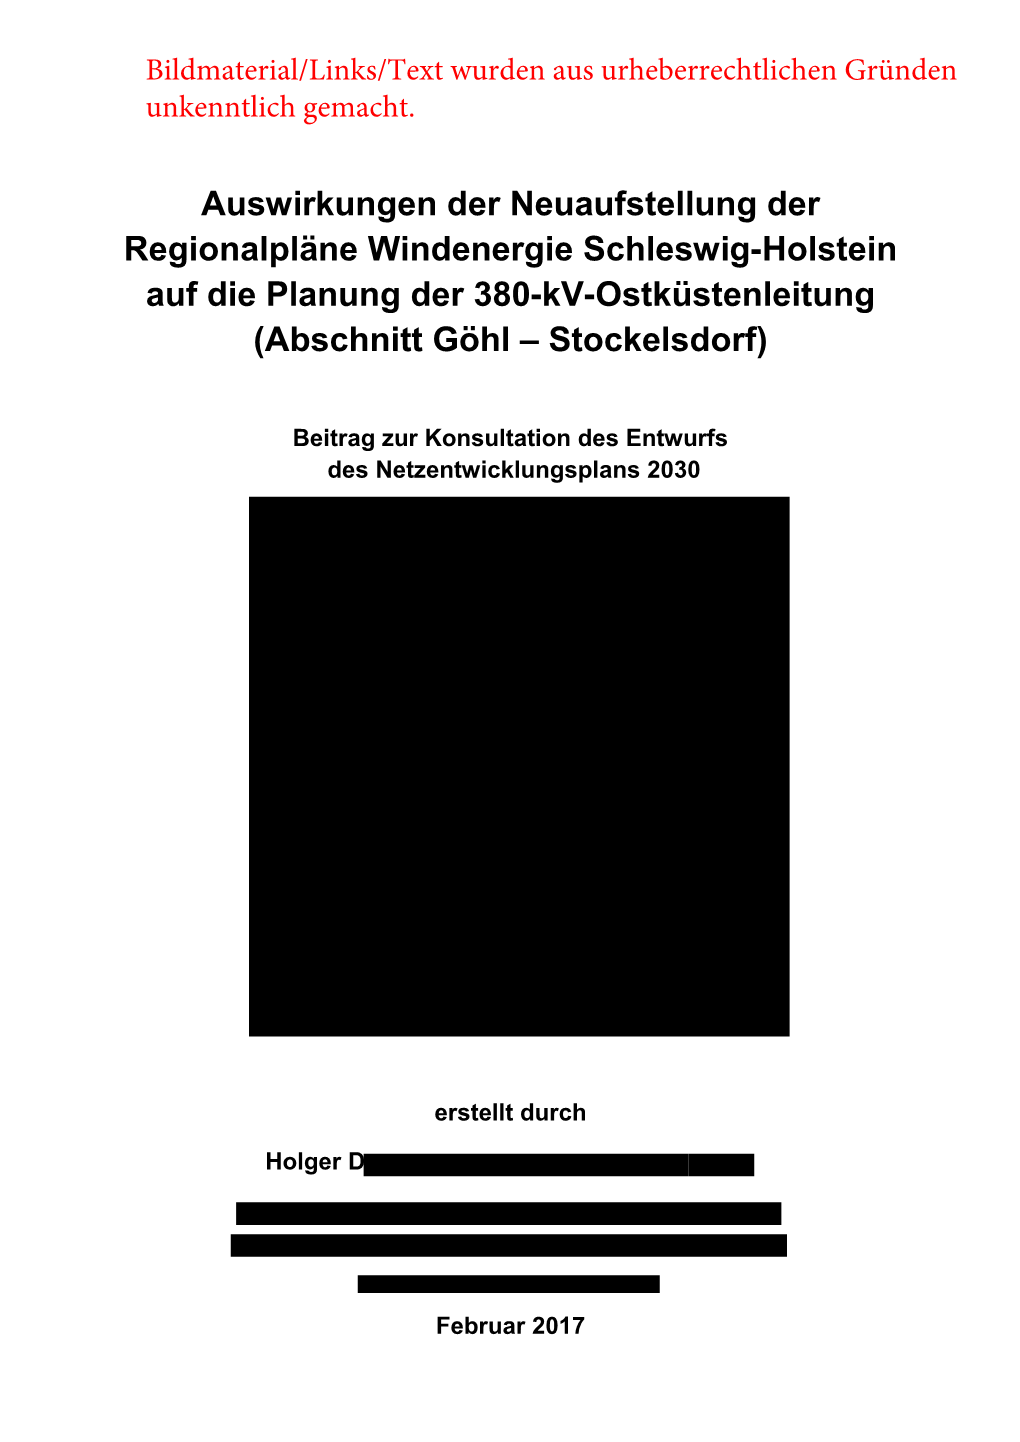 Auswirkungen Der Neuaufstellung Der Regionalpläne Windenergie Schleswig-Holstein Auf Die Planung Der 380-Kv-Ostküstenleitung (Abschnitt Göhl – Stockelsdorf)